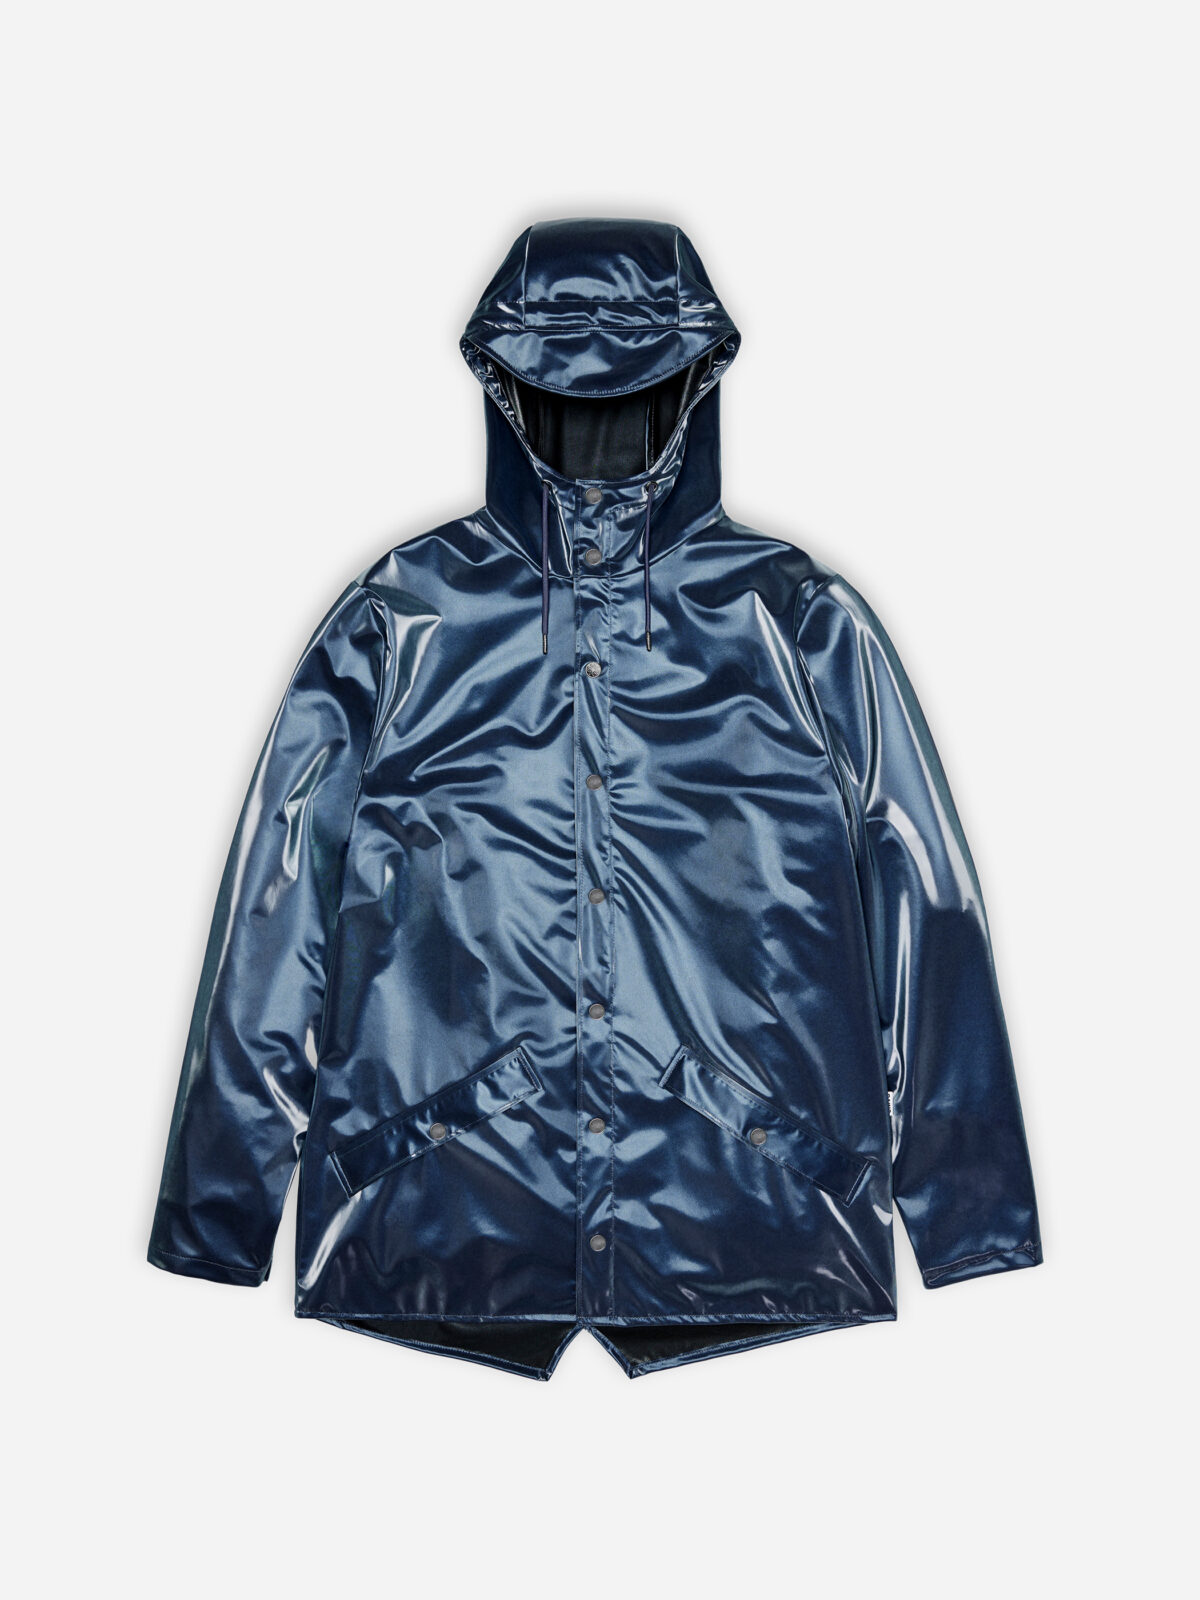 12010_sonic_jacket-unisex-raincoat-rains-matchboxathens